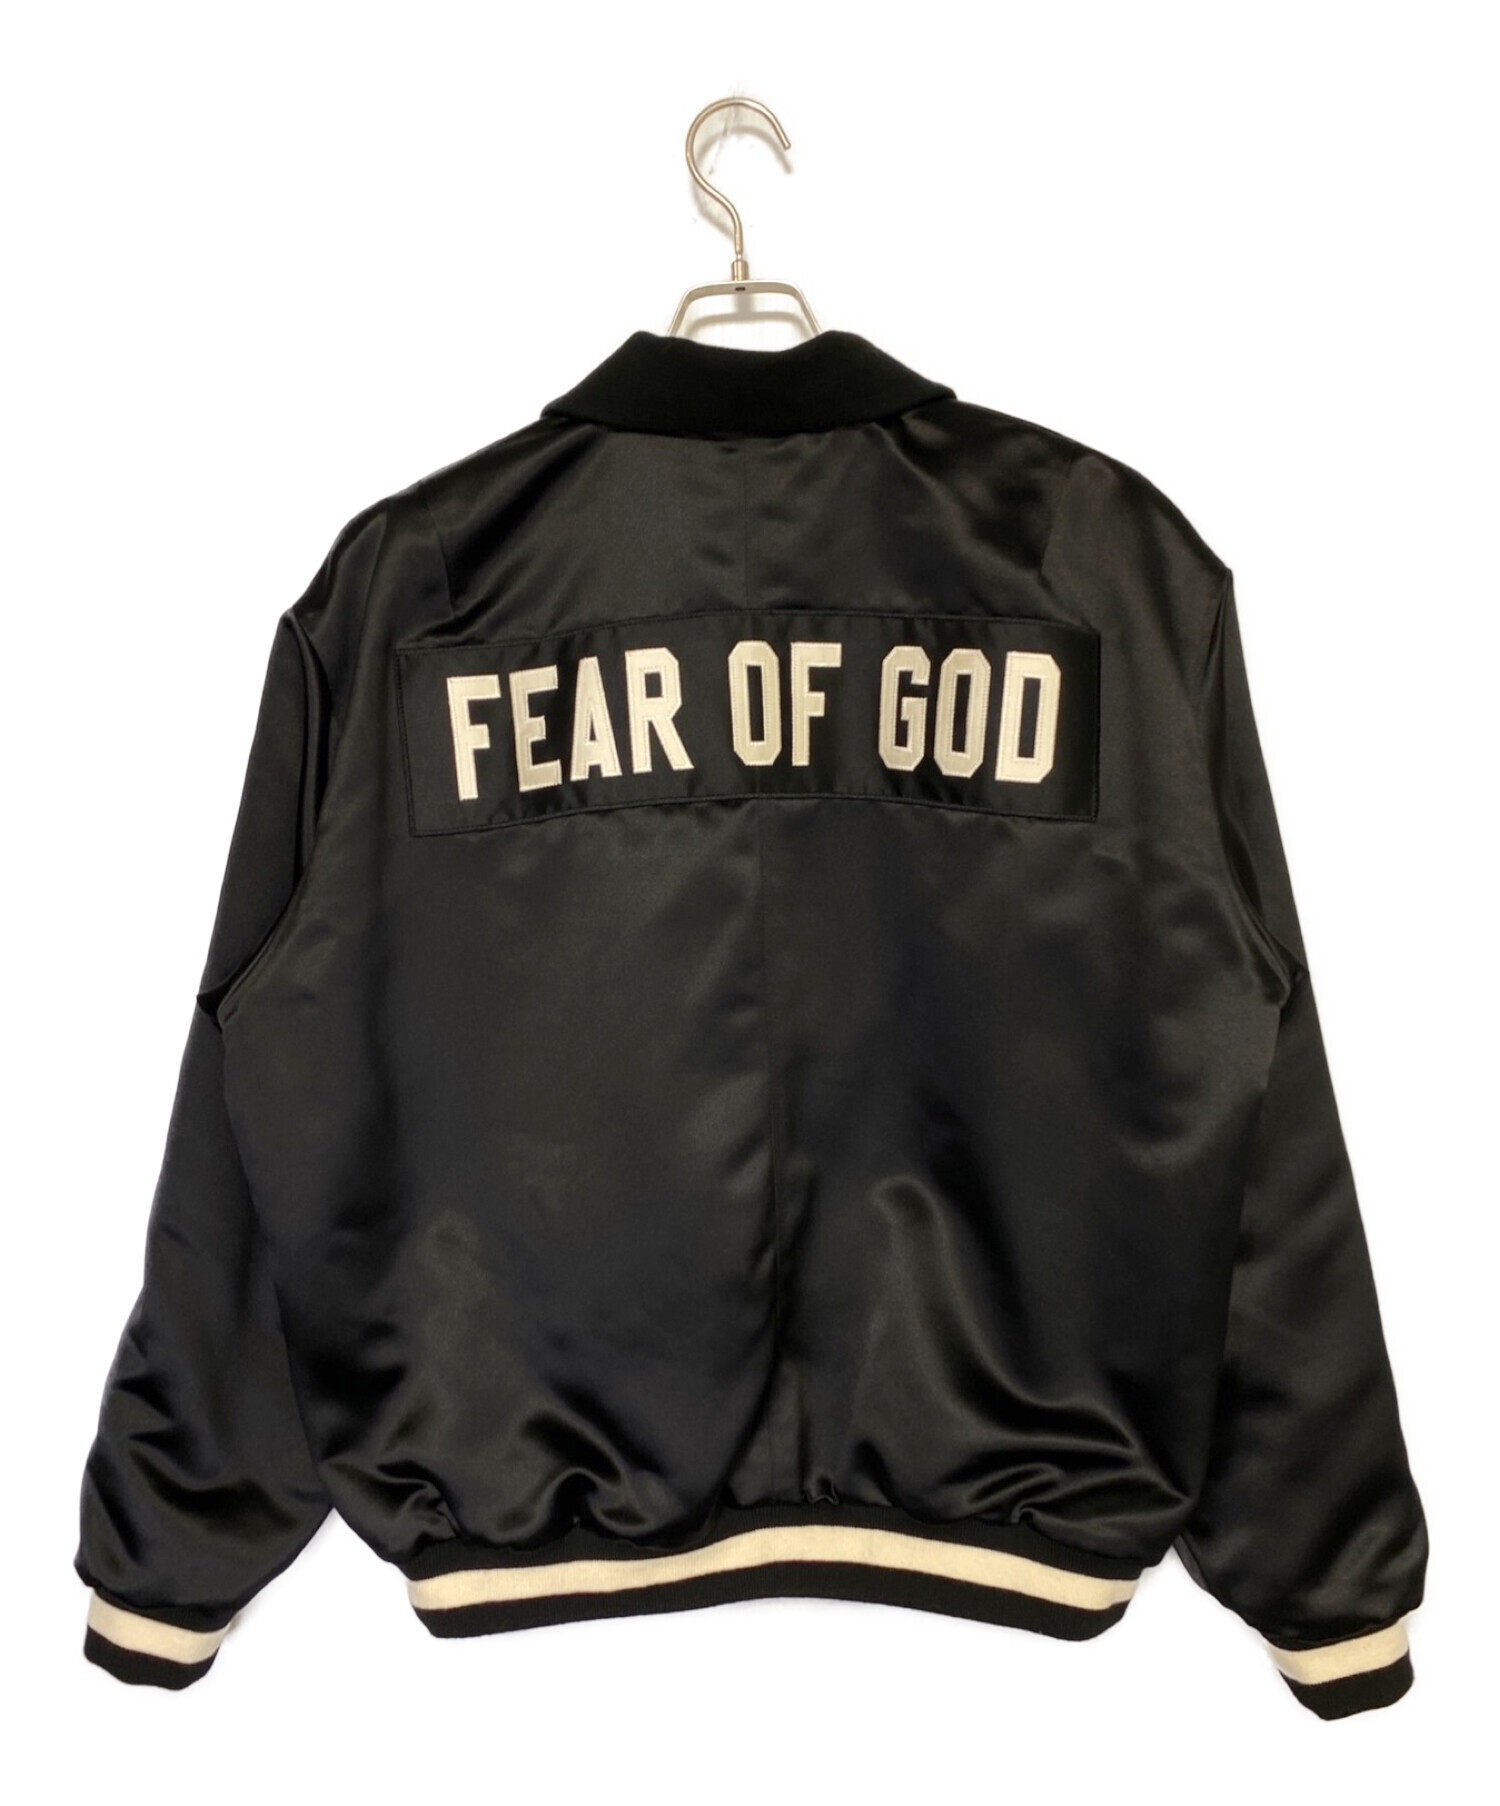 fear of god 5th サテンジャケット ハーフジップ購入を検討しています ...